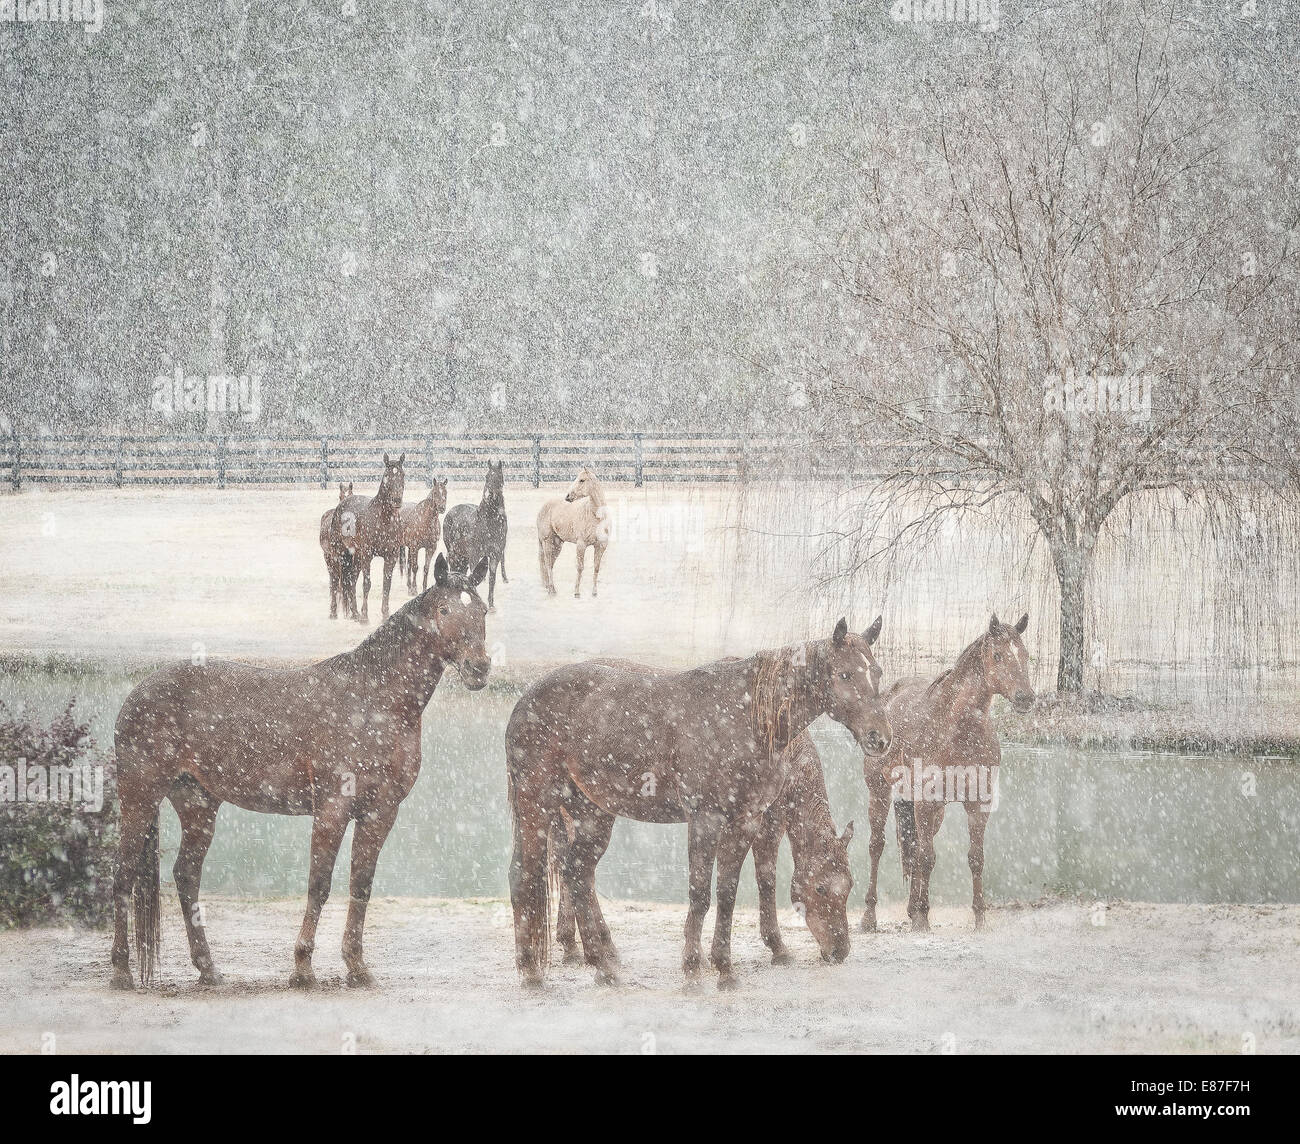 Herd of mares in snow storm Stock Photo